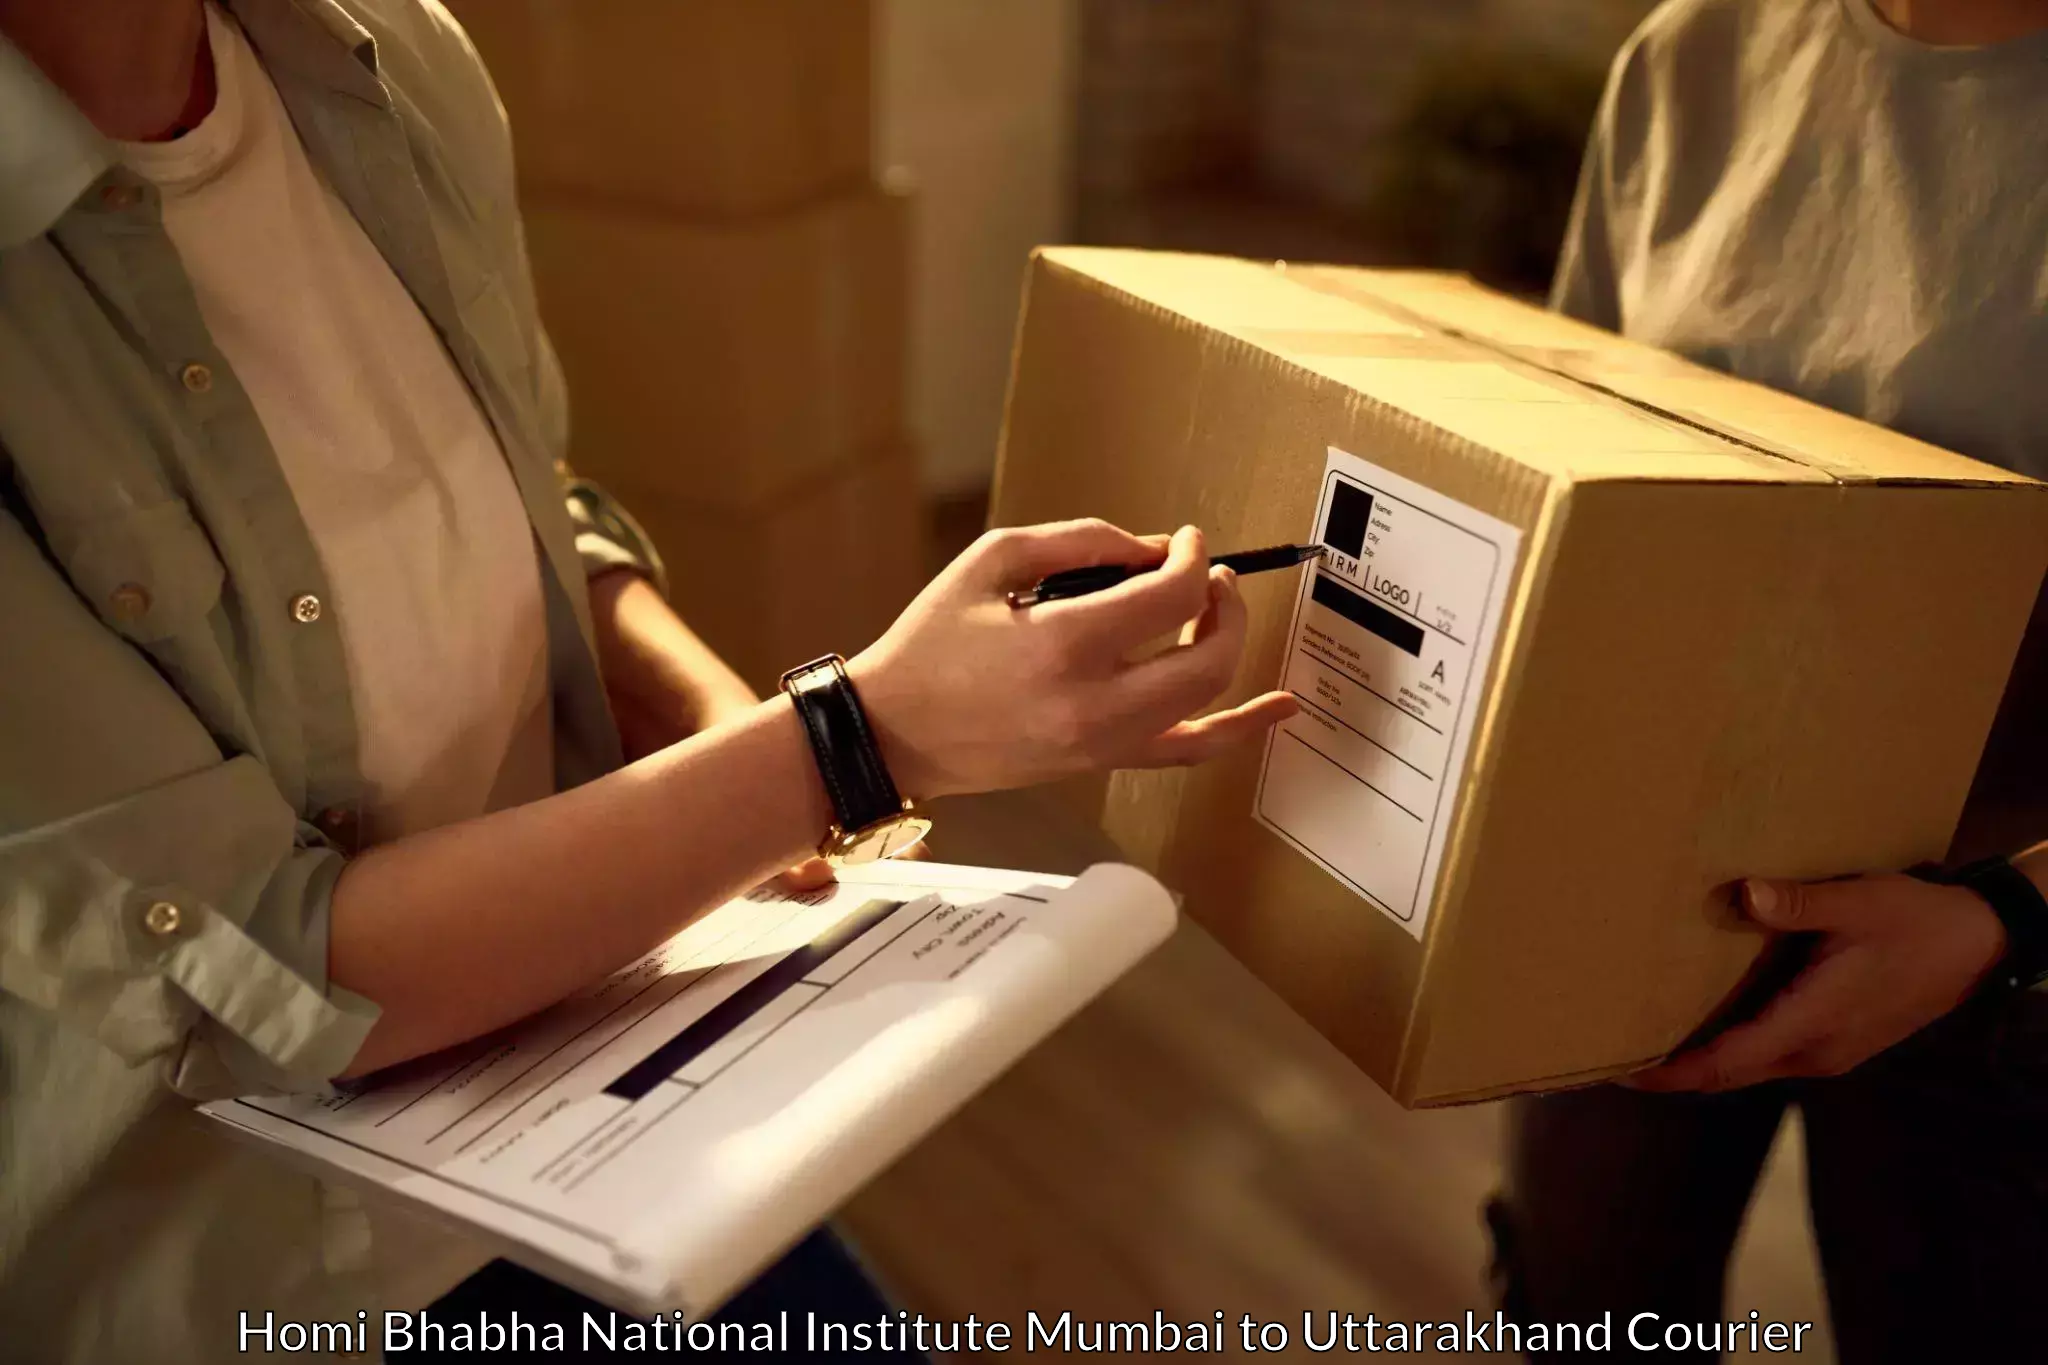 Online courier booking in Homi Bhabha National Institute Mumbai to Uttarakhand